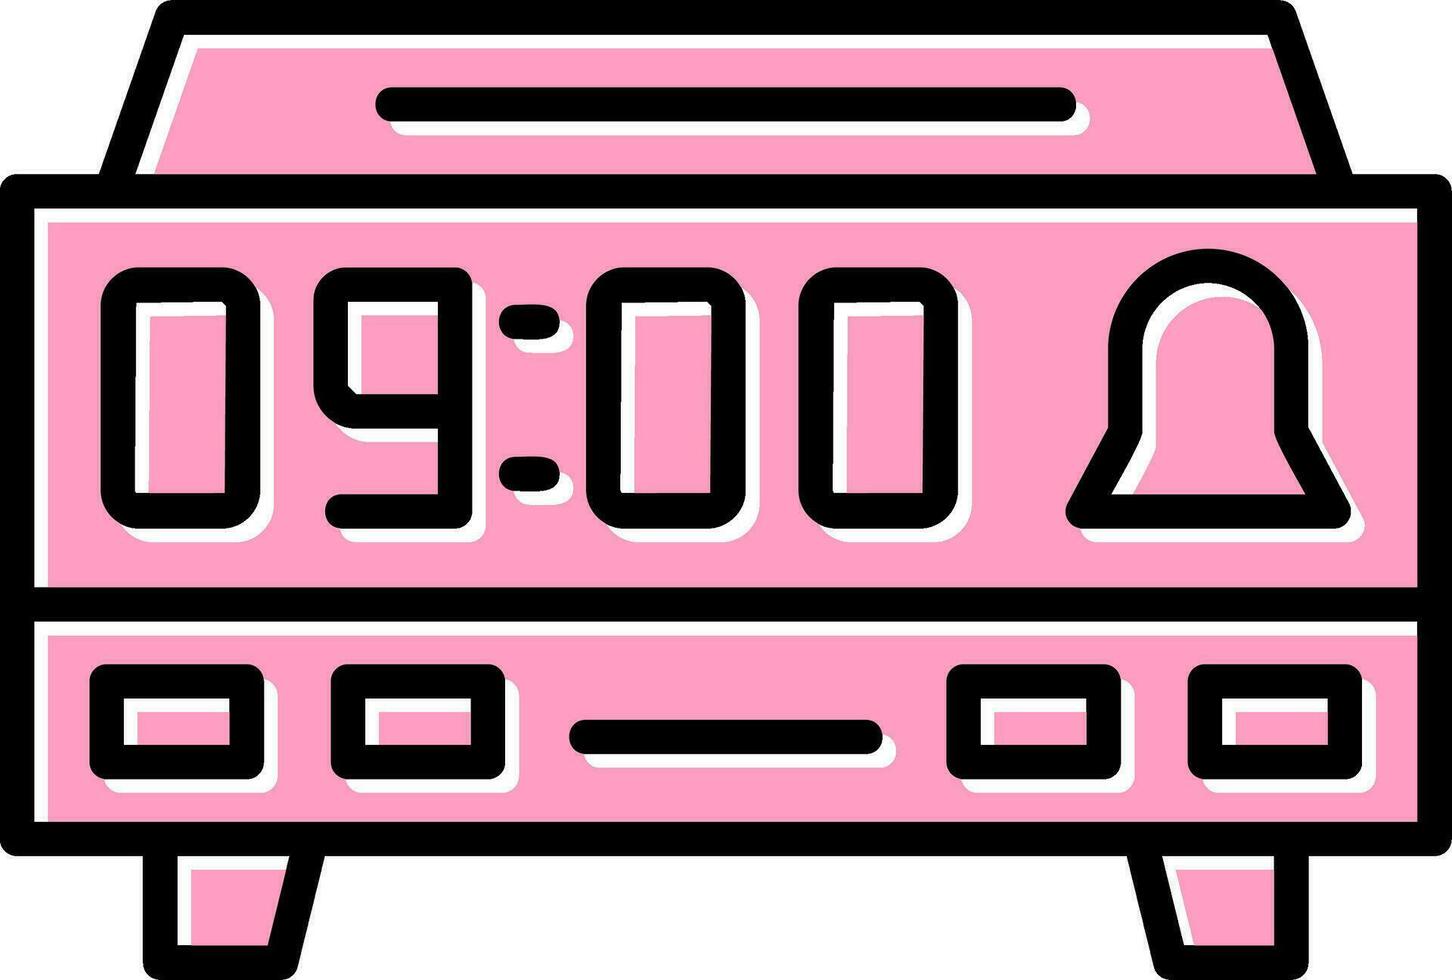 Digital Clock Vector Icon